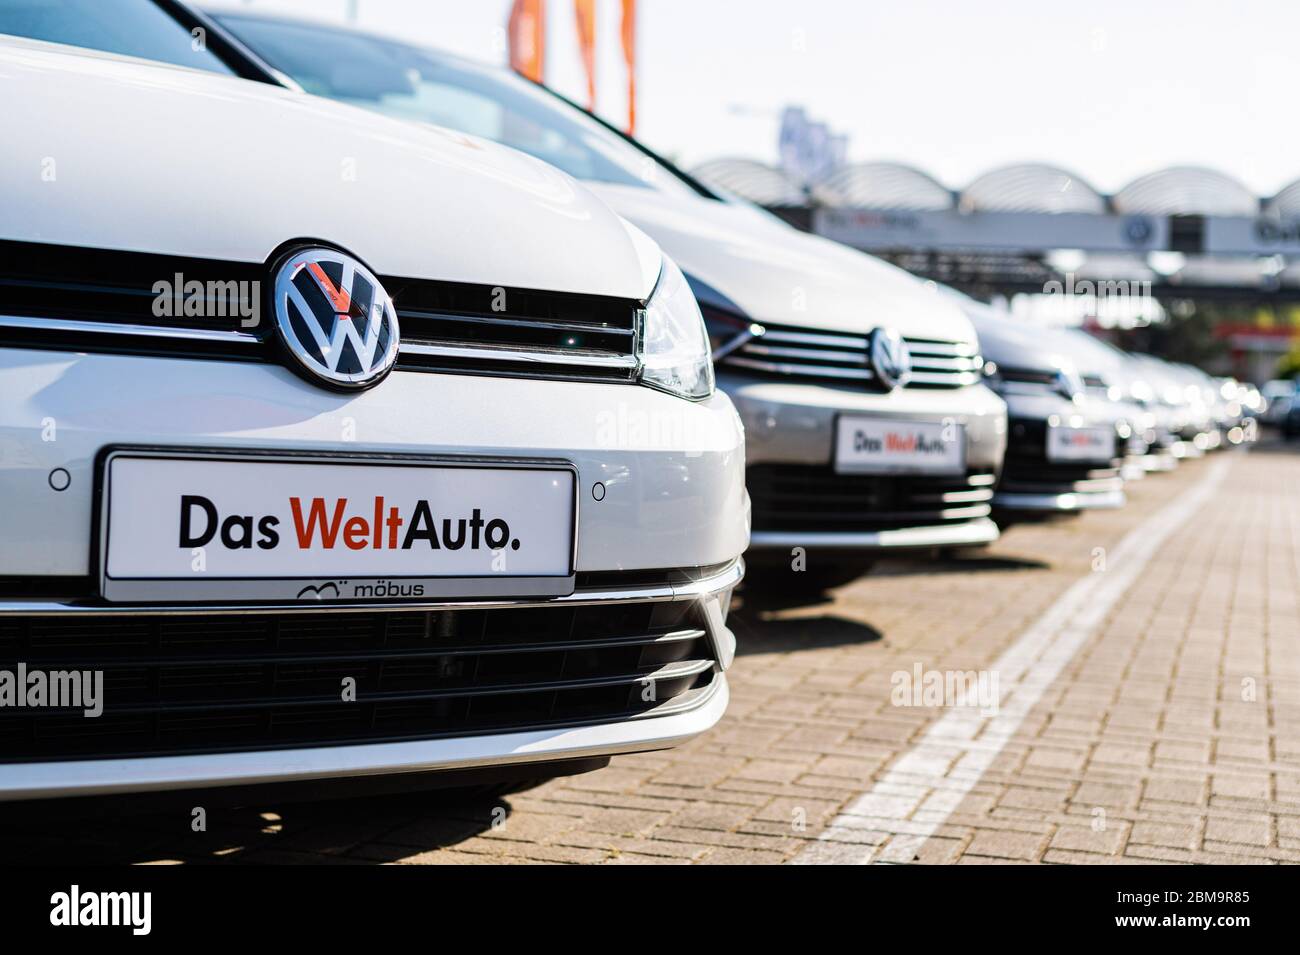 Berlin, Allemagne. 7 mai 2020. Les véhicules sont vus dans un concessionnaire de voitures Volkswagen à Berlin, capitale de l'Allemagne, le 7 mai 2020. L'exportation de voitures en Allemagne a été « quasiment paralysée », a indiqué l'Association allemande de l'industrie automobile (VDA). En baisse de 94 %, seulement 17,600 voitures de tourisme neuves ont été livrées à des clients du monde entier en avril. Crédit: Binh Truong/Xinhua/Alay Live News Banque D'Images